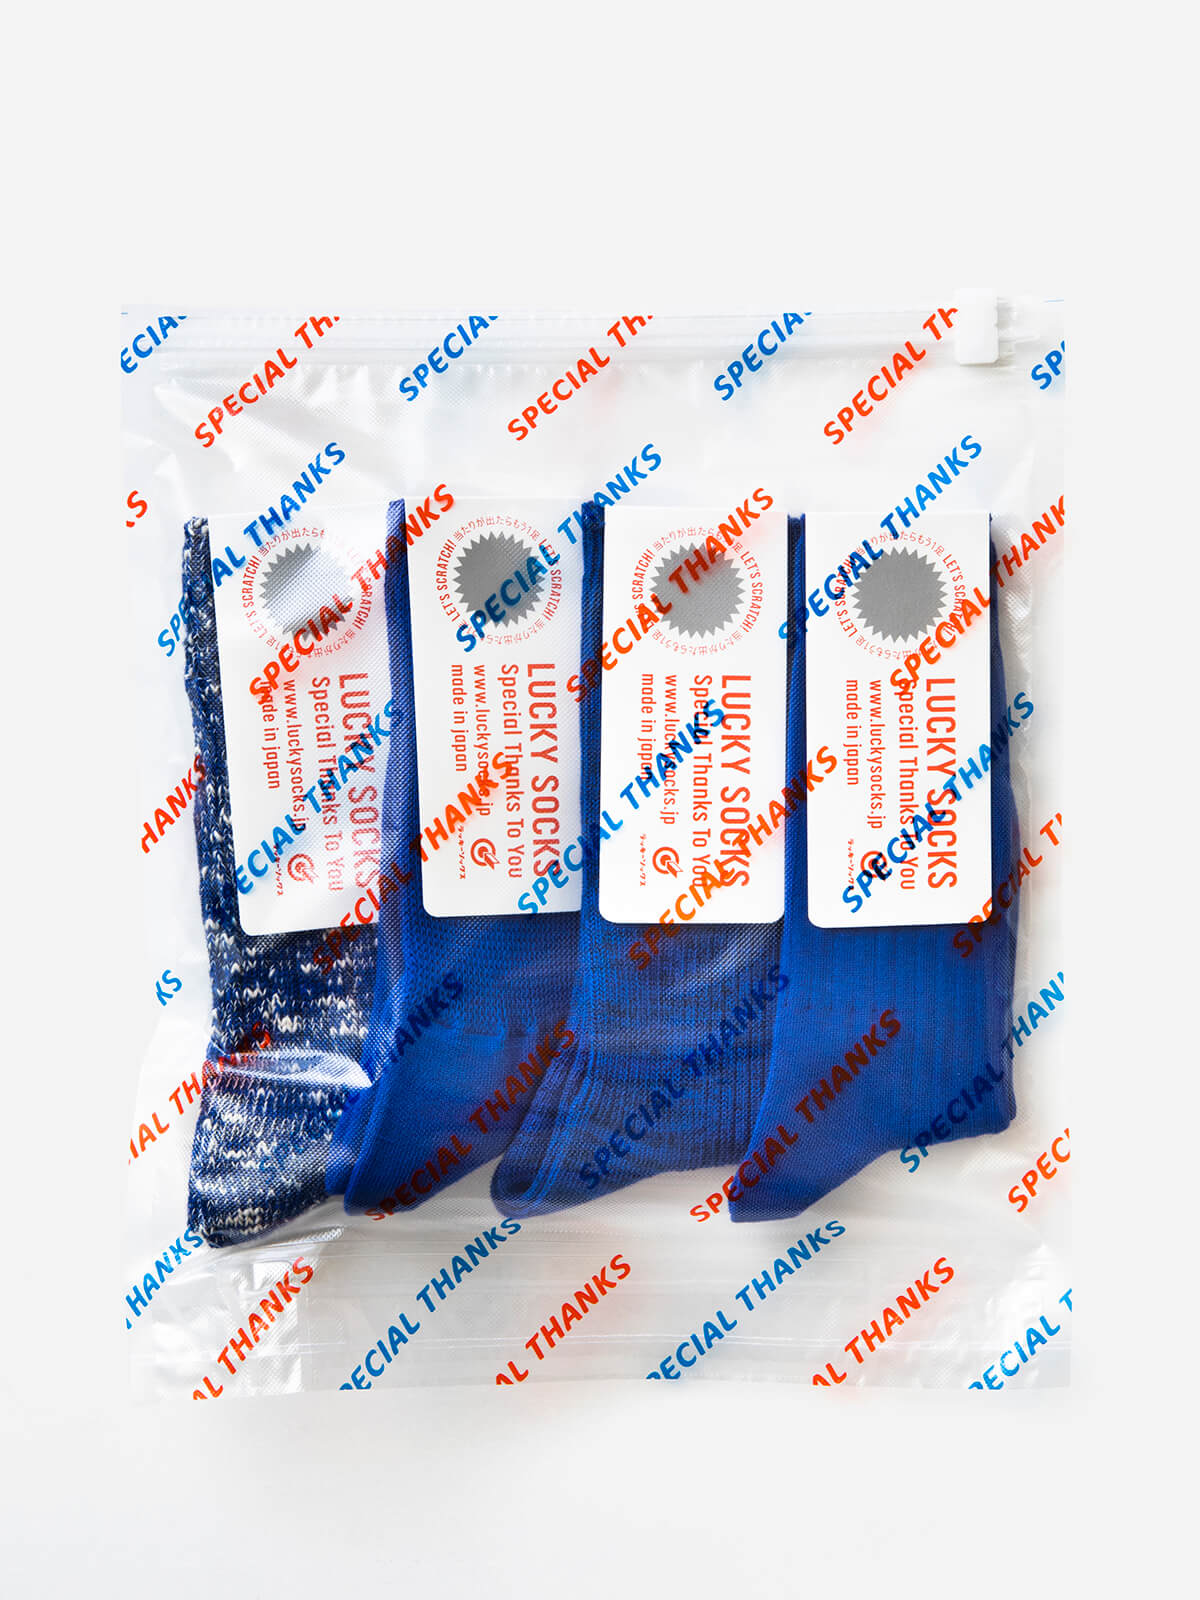 当たりつきギフト専用靴下のLUCKY SOCKS（ラッキーソックス）の4pcs Gift Pack（4ピースギフトパック）のブルー